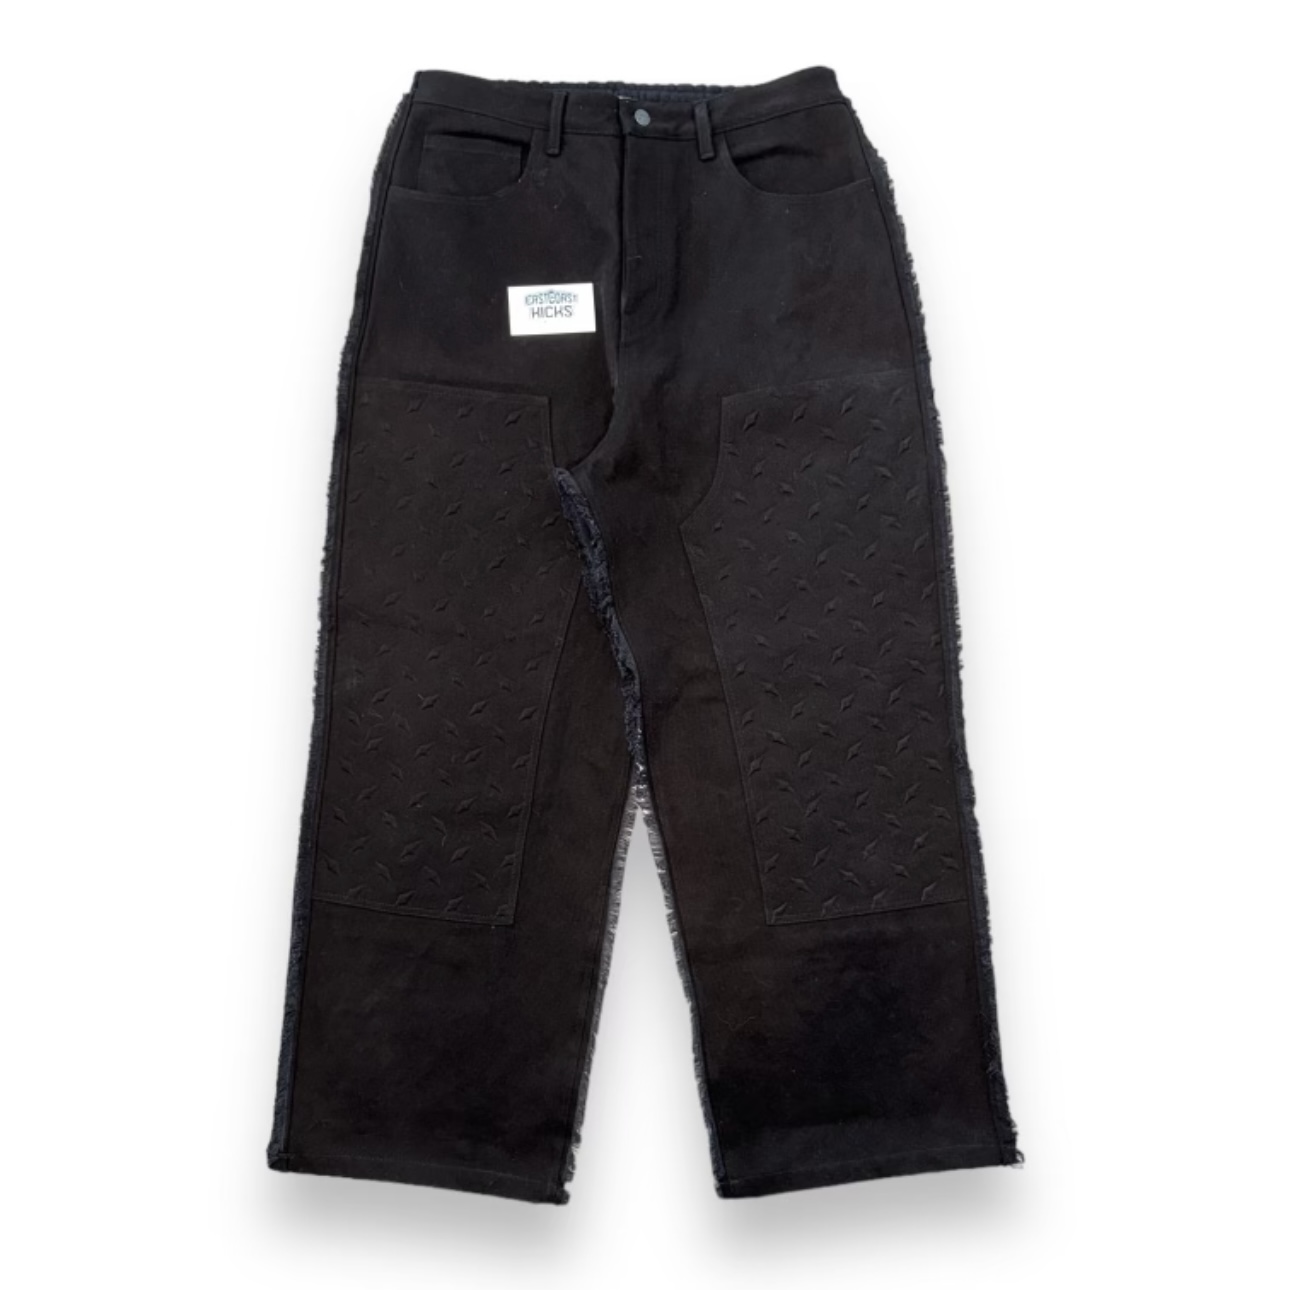 Billy Hill x Warren Lotas Hybrid Jeans Sweatpants Black Size M (Super Oversized)